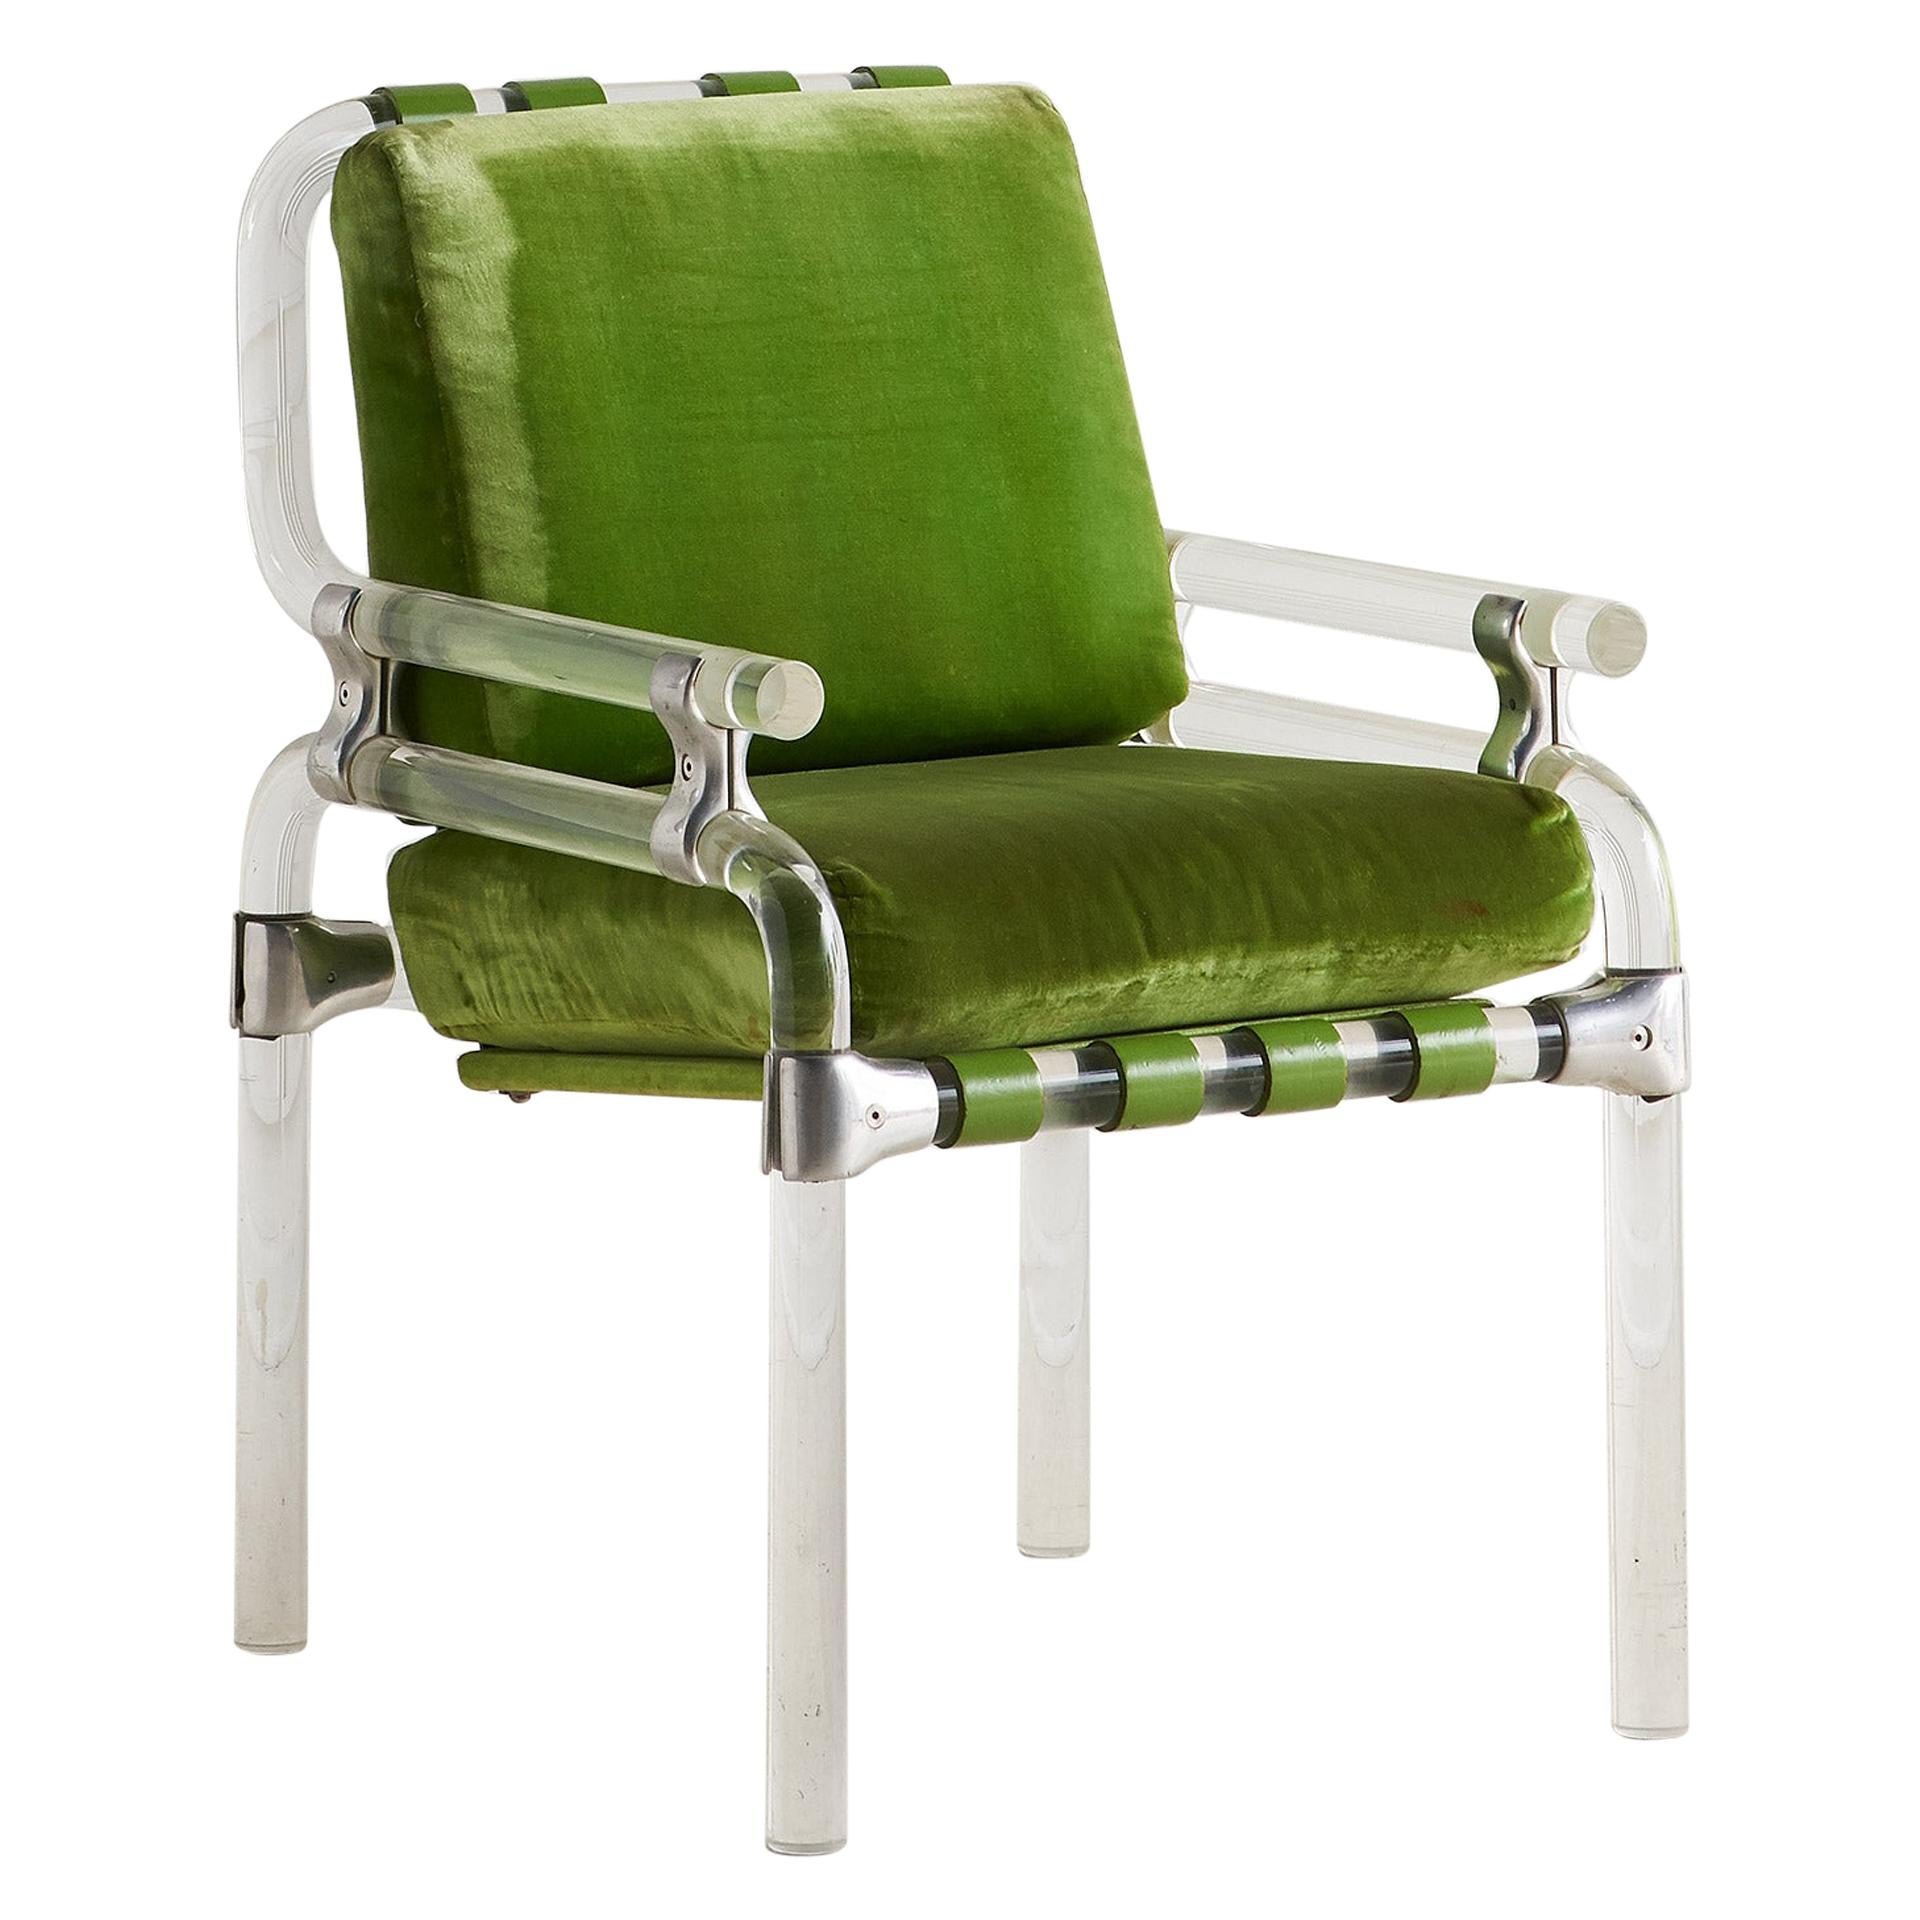 Jeff Messerschmidt Pipeline Chair in Green Fabric